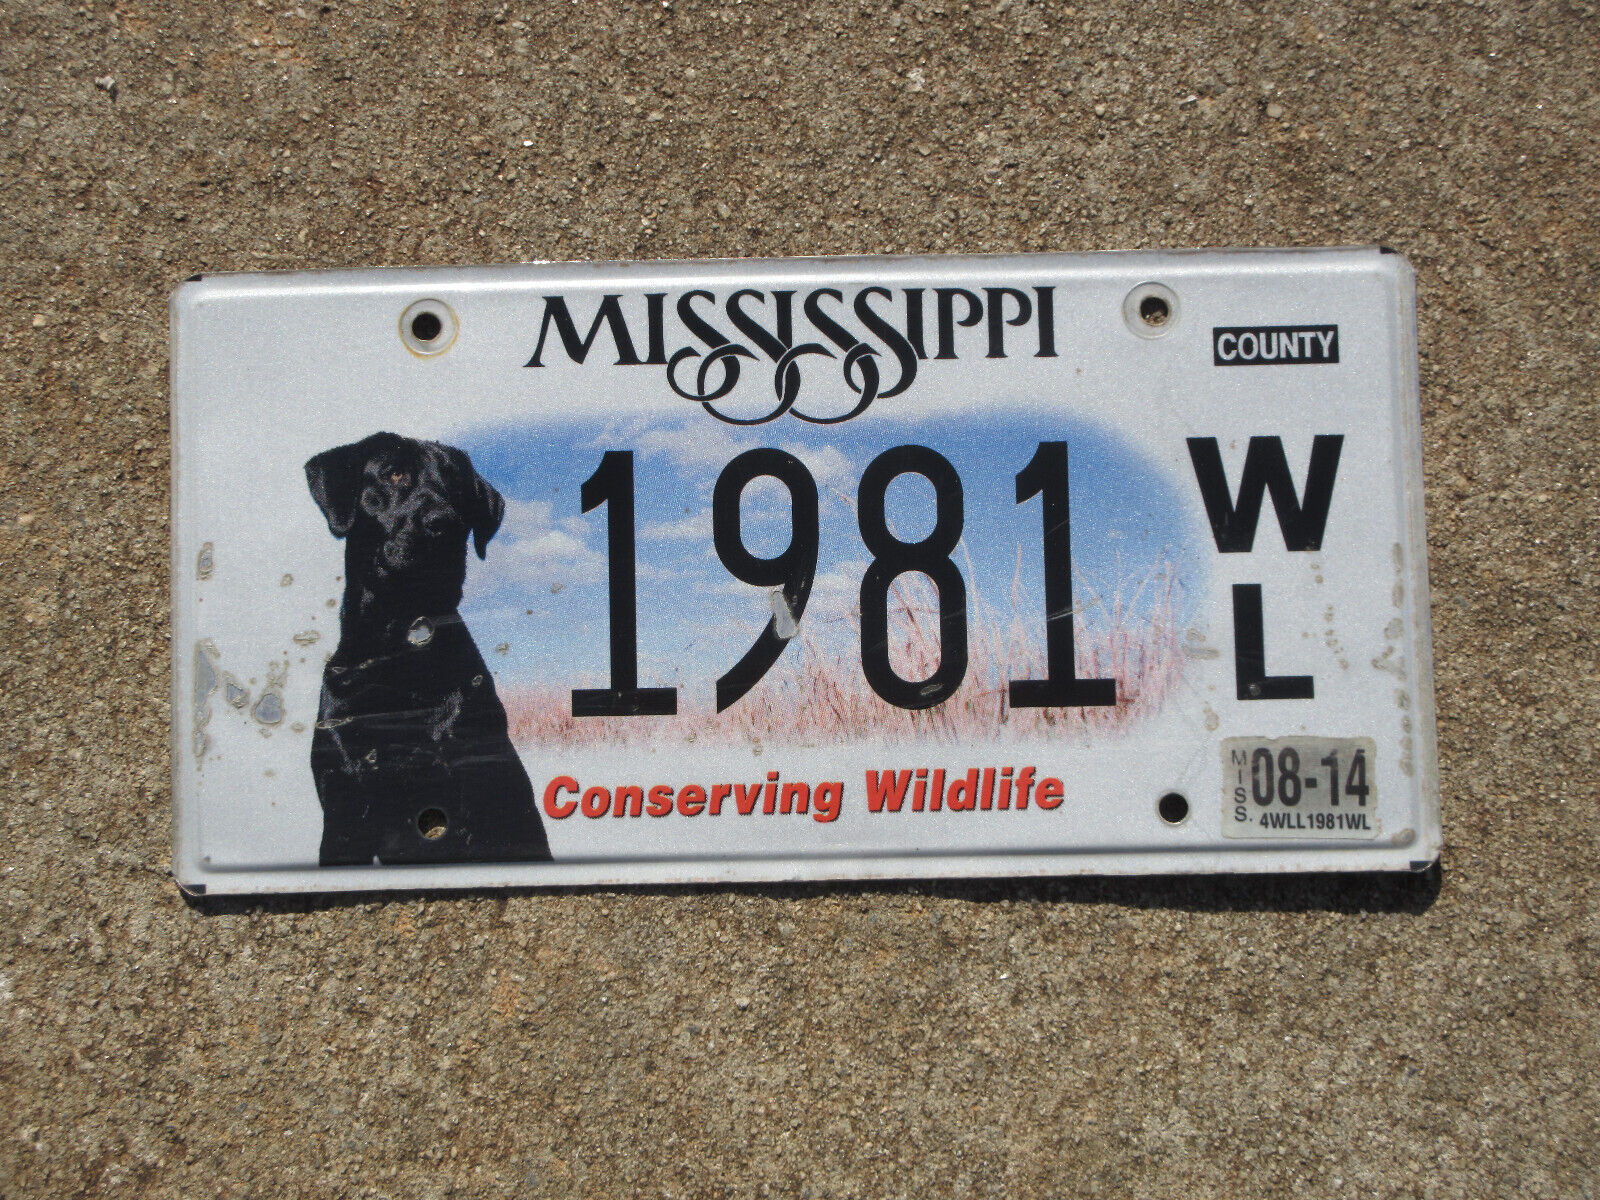 2014 Mississippi Conserving Wildlife License Plate Black Labrador Dog 1981 WL MS